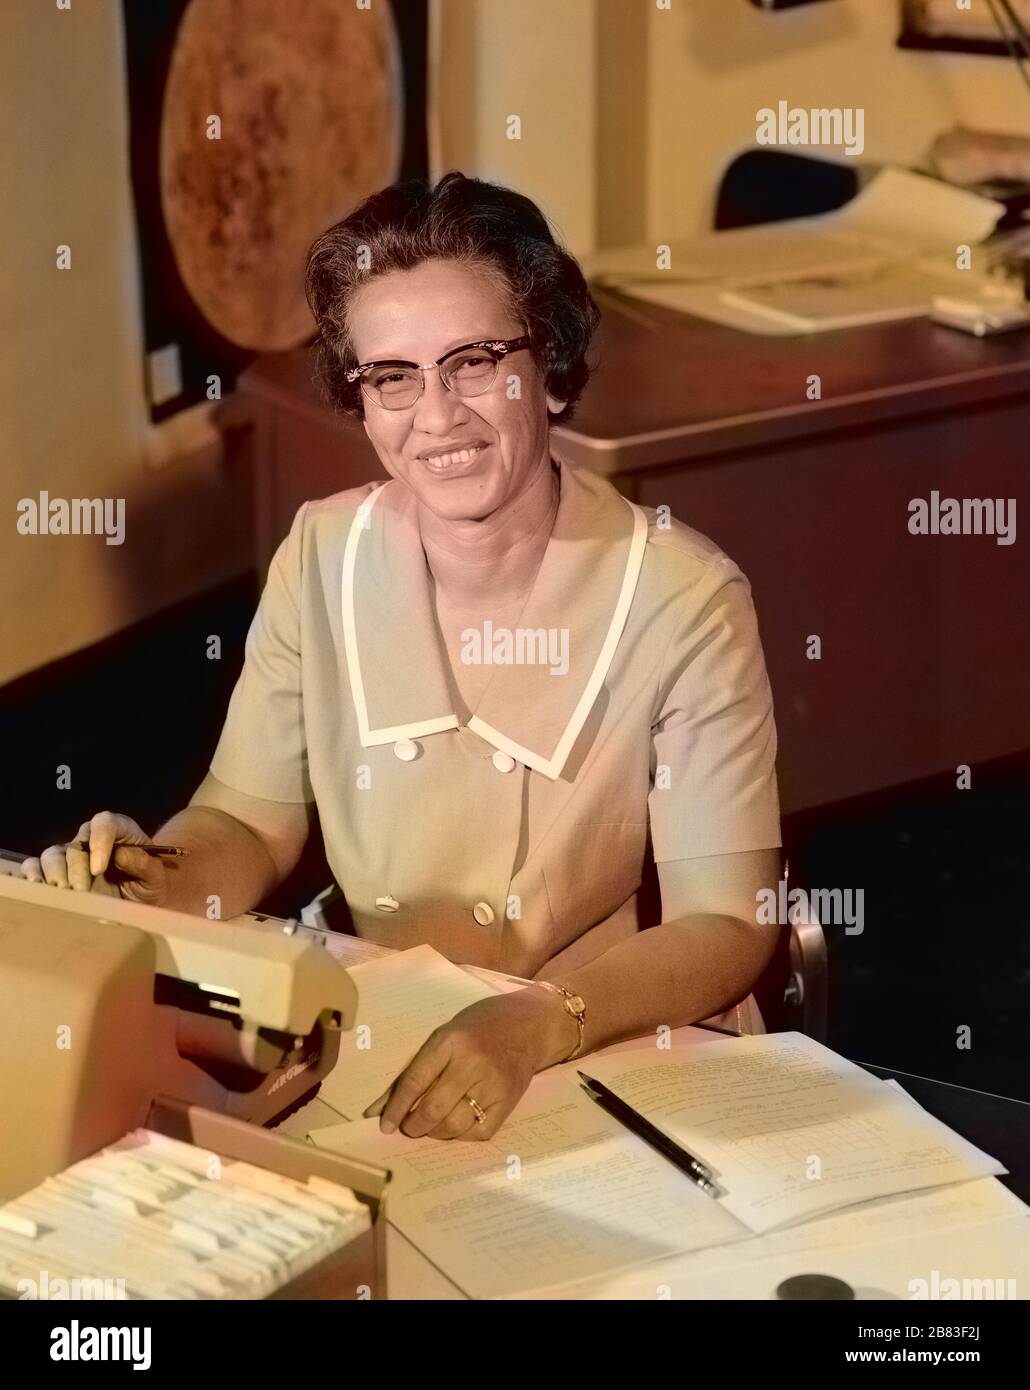 Portrait de Katherine Johnson, pionnière en informatique humaine de la NASA et en mathématiques afro-américaines (1918-2020), souriant, à un bureau avec notes, 1966. Image de courtoisie NASA. Remarque : l'image a été colorisée numériquement à l'aide d'un processus moderne. Les couleurs peuvent ne pas être précises sur une période donnée. () Banque D'Images